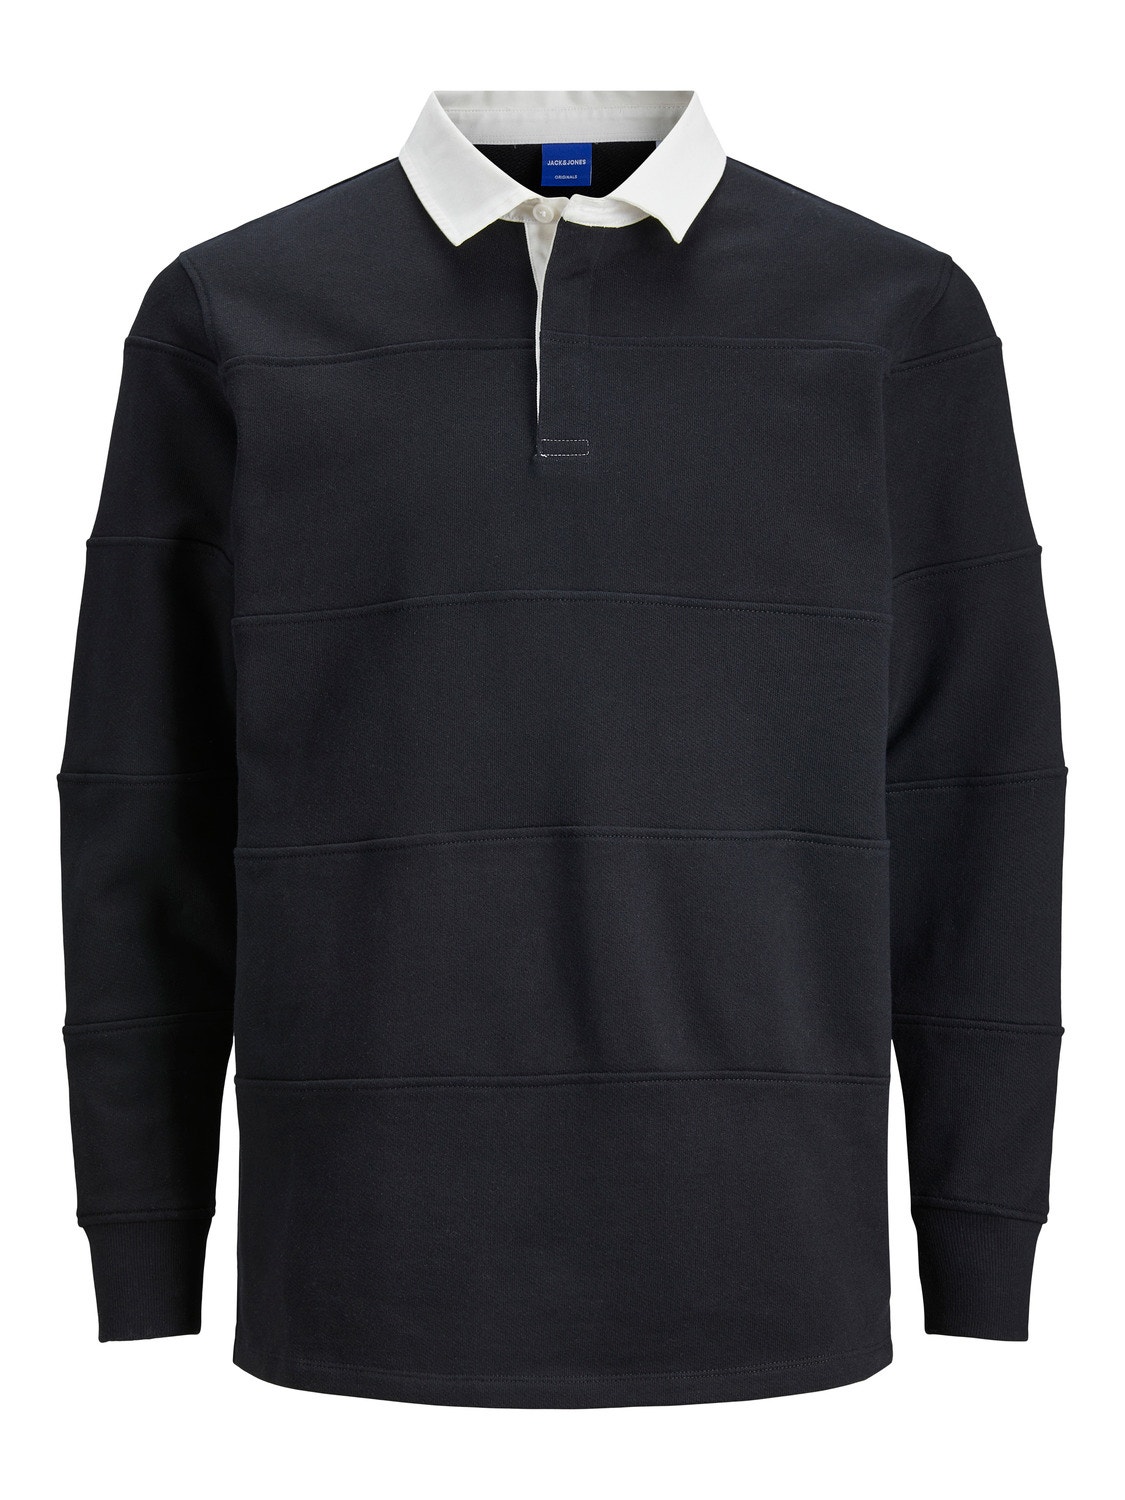 Jack & Jones Plain Crew neck Sweatshirt -Black - 12247021